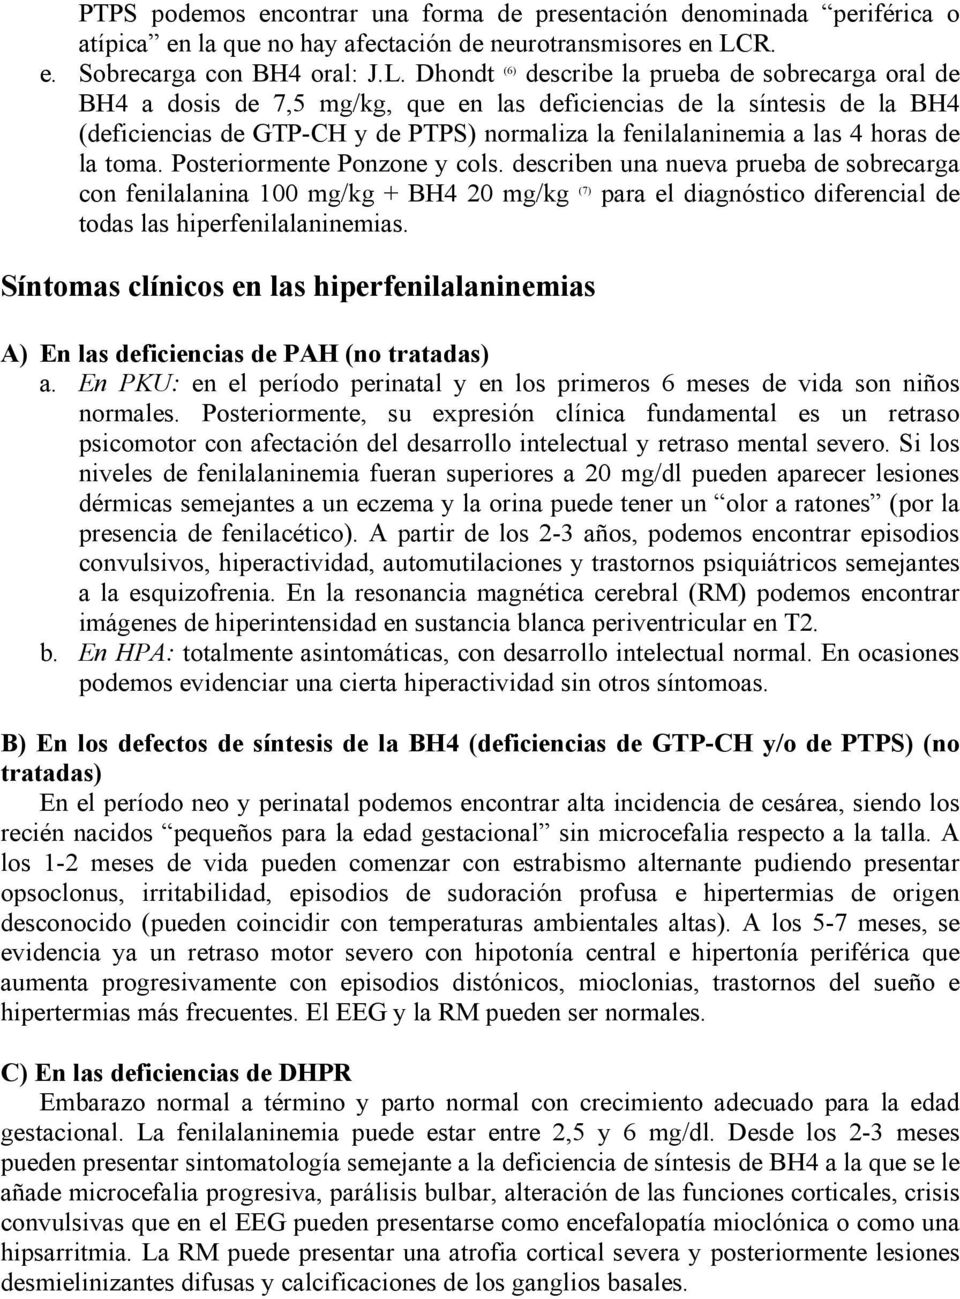 Dhondt (6) describe la prueba de sobrecarga oral de BH4 a dosis de 7,5 mg/kg, que en las deficiencias de la síntesis de la BH4 (deficiencias de GTP-CH y de PTPS) normaliza la fenilalaninemia a las 4